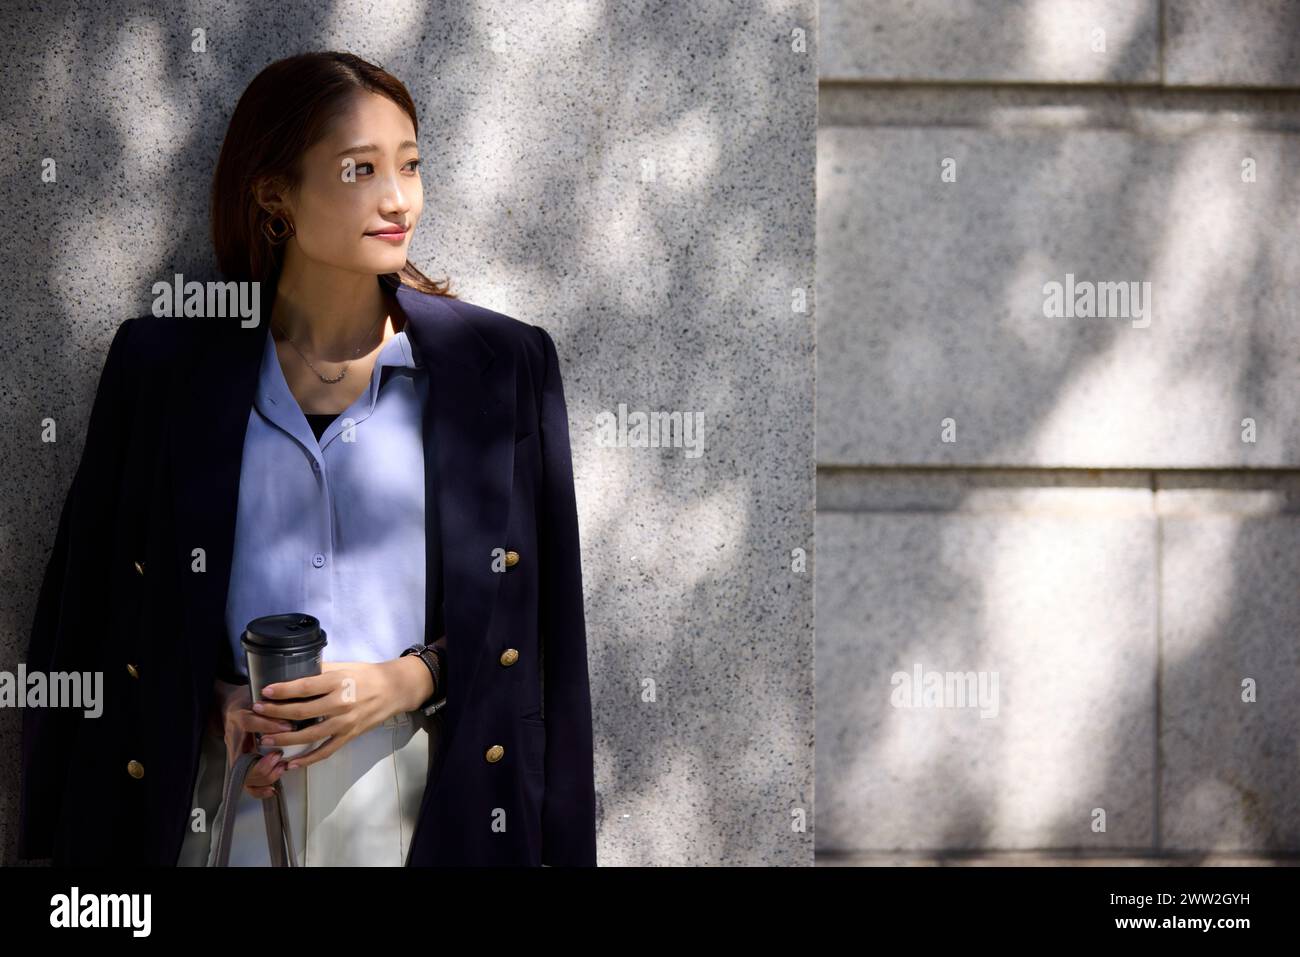 Une femme dans une chemise bleue et une veste appuyée contre un mur Banque D'Images